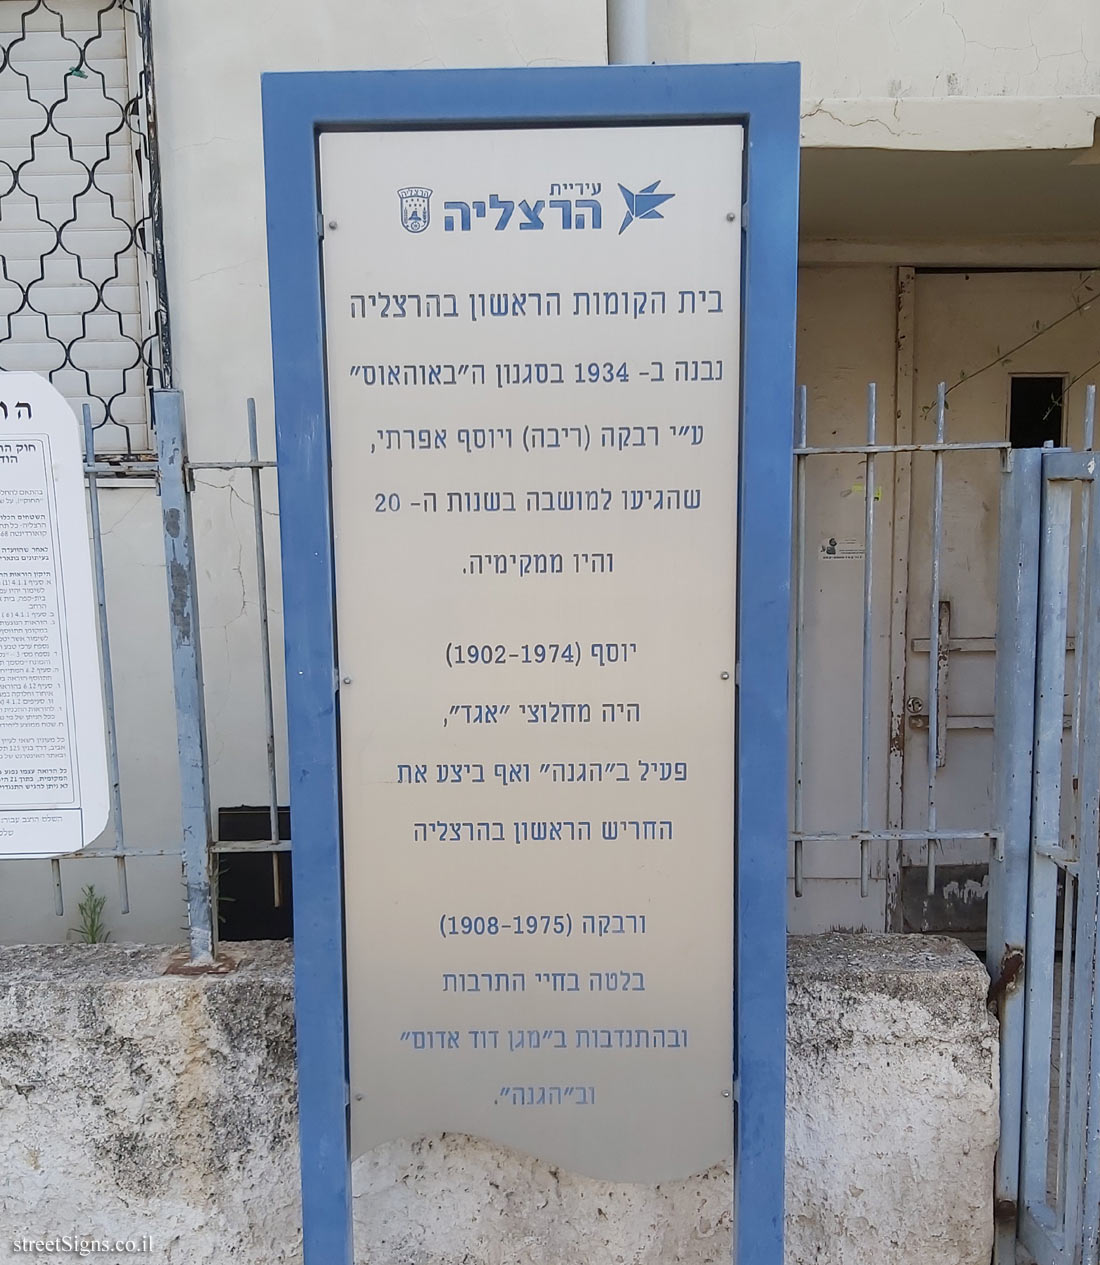 Herzliya - The first multi-story in Herzliya